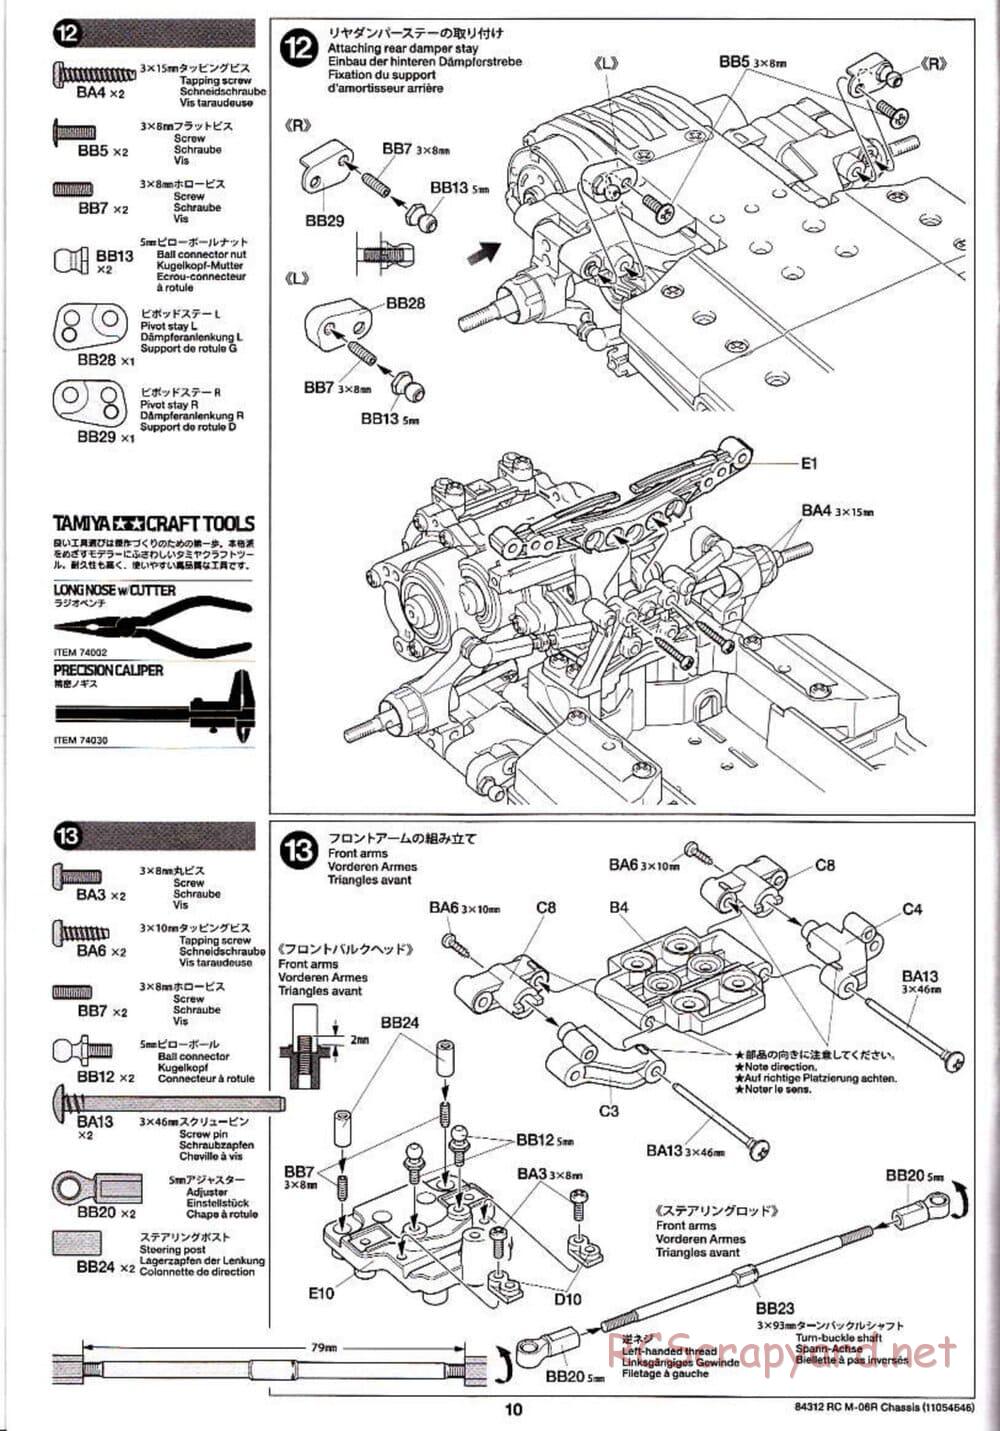 Tamiya - M-06R Chassis - Manual - Page 10